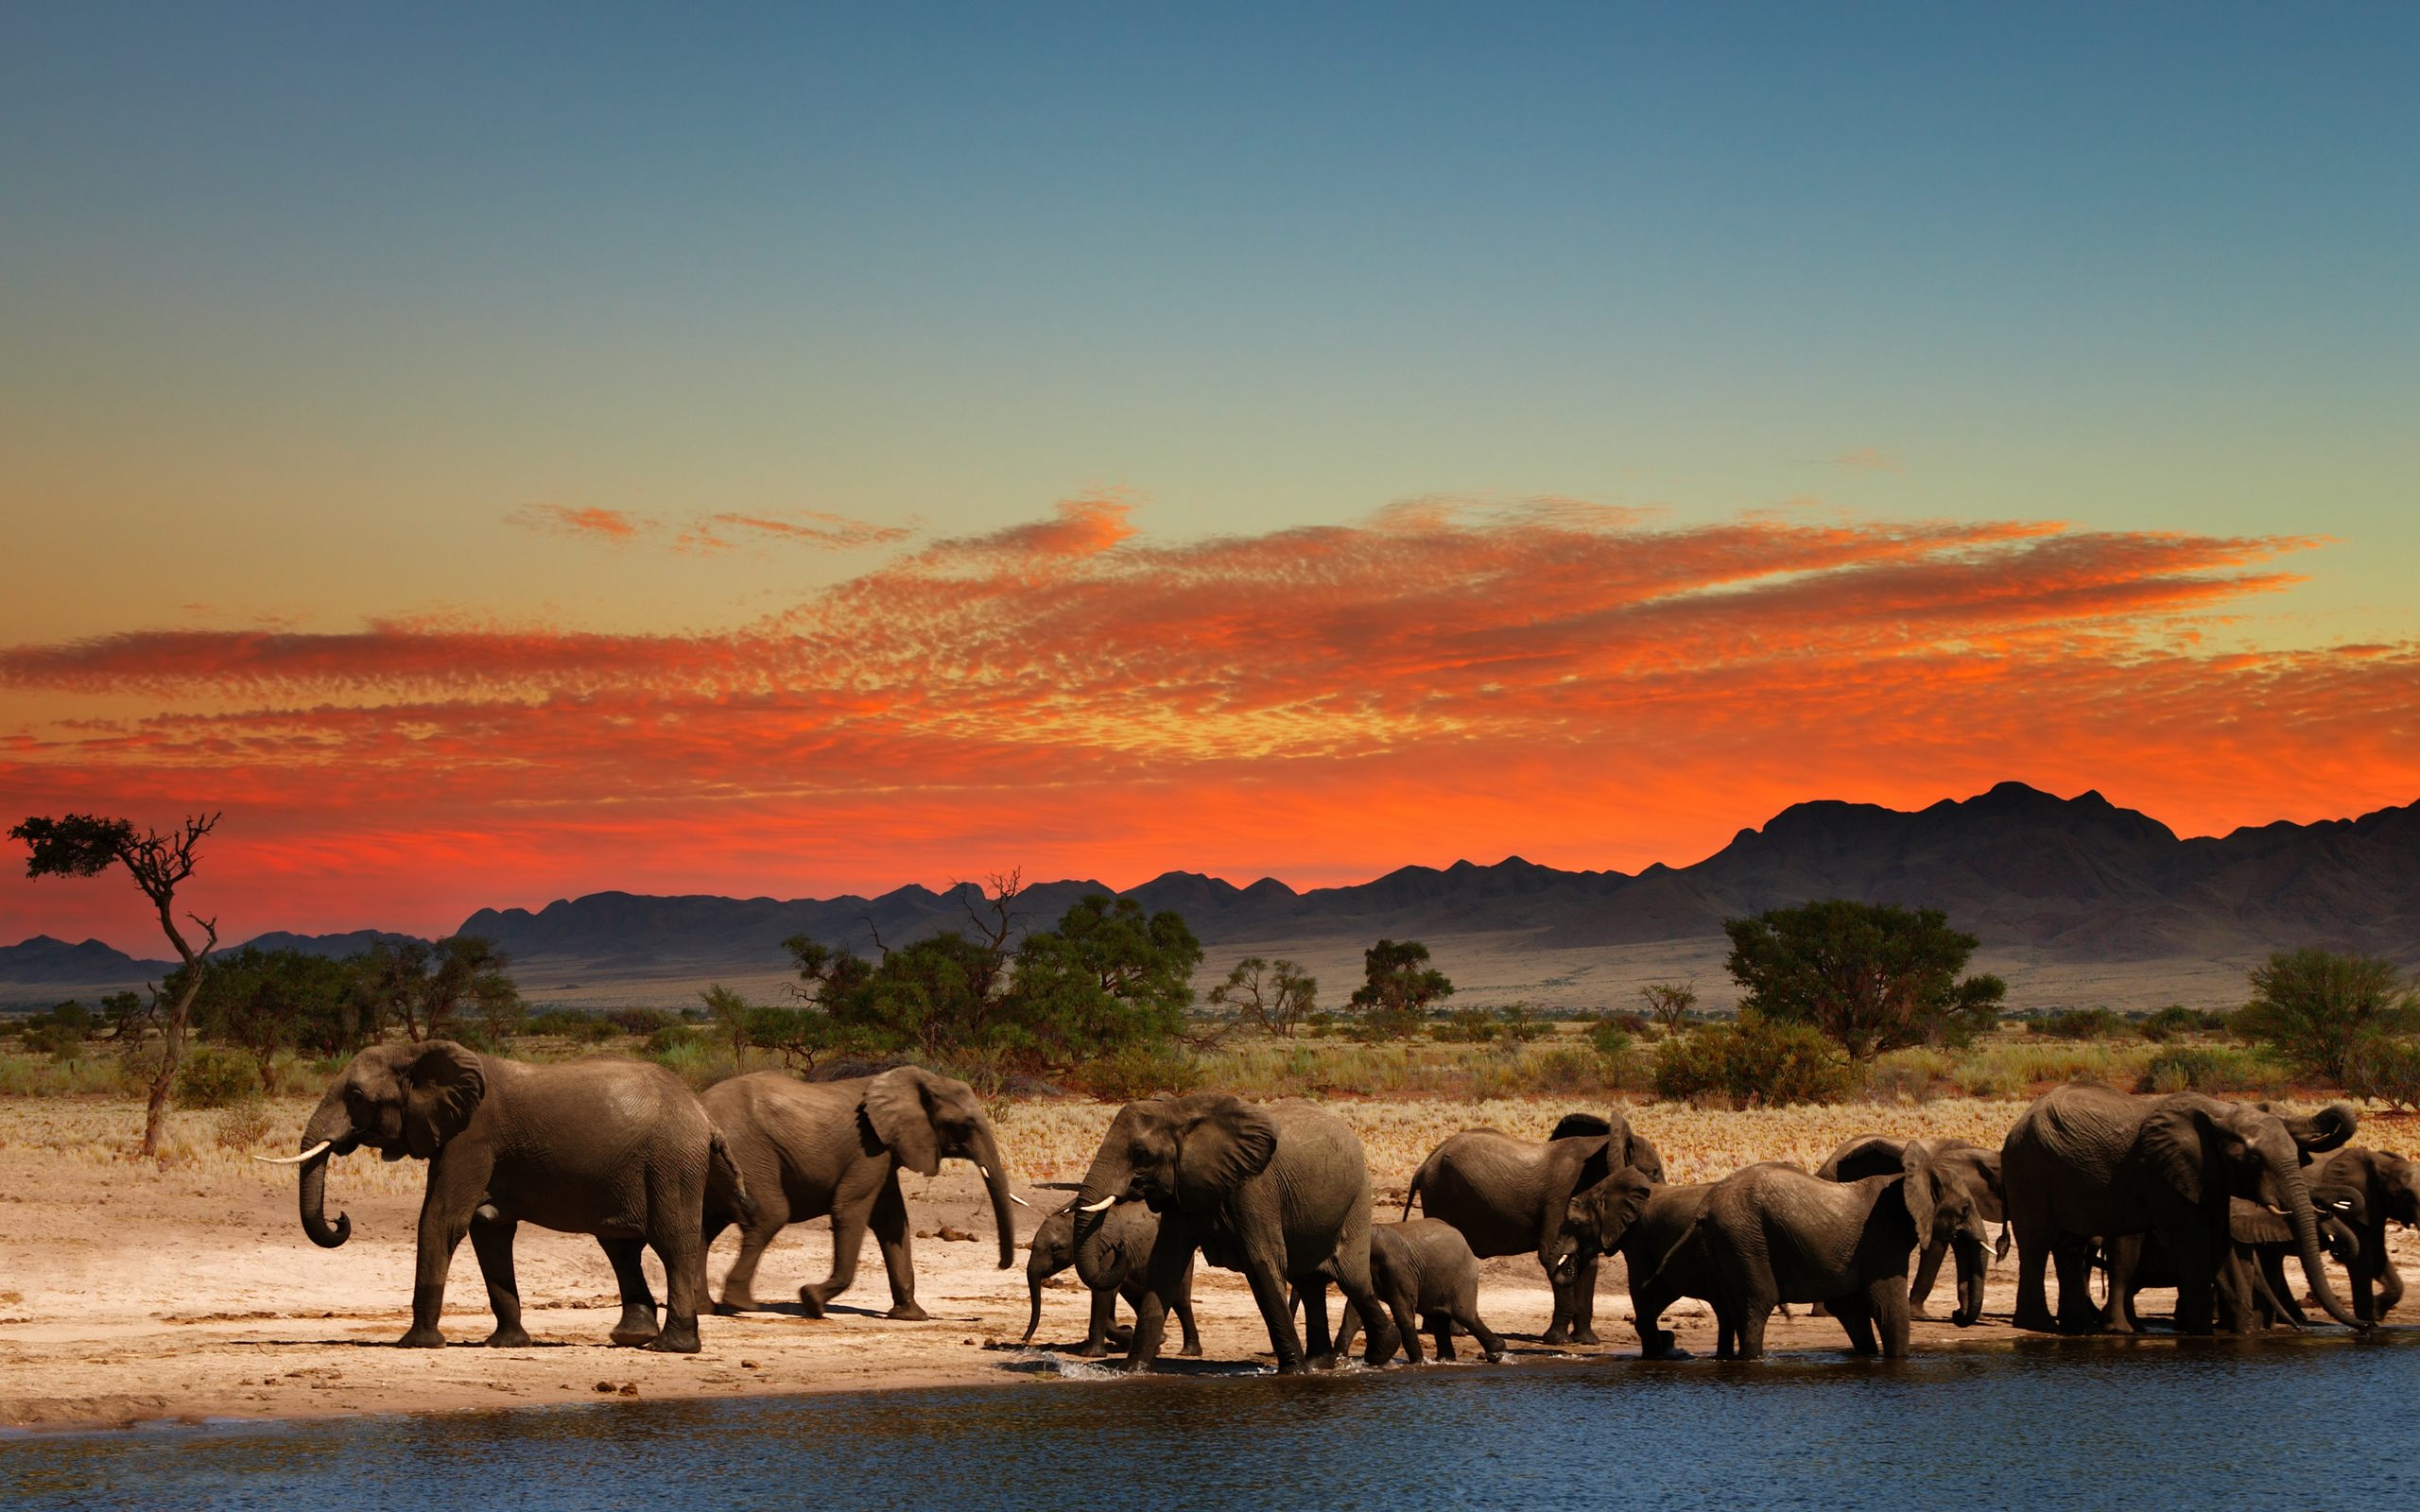  Elephants in African savanna 4K Ultra HD wallpaper 4k WallpaperNet 2560x1600